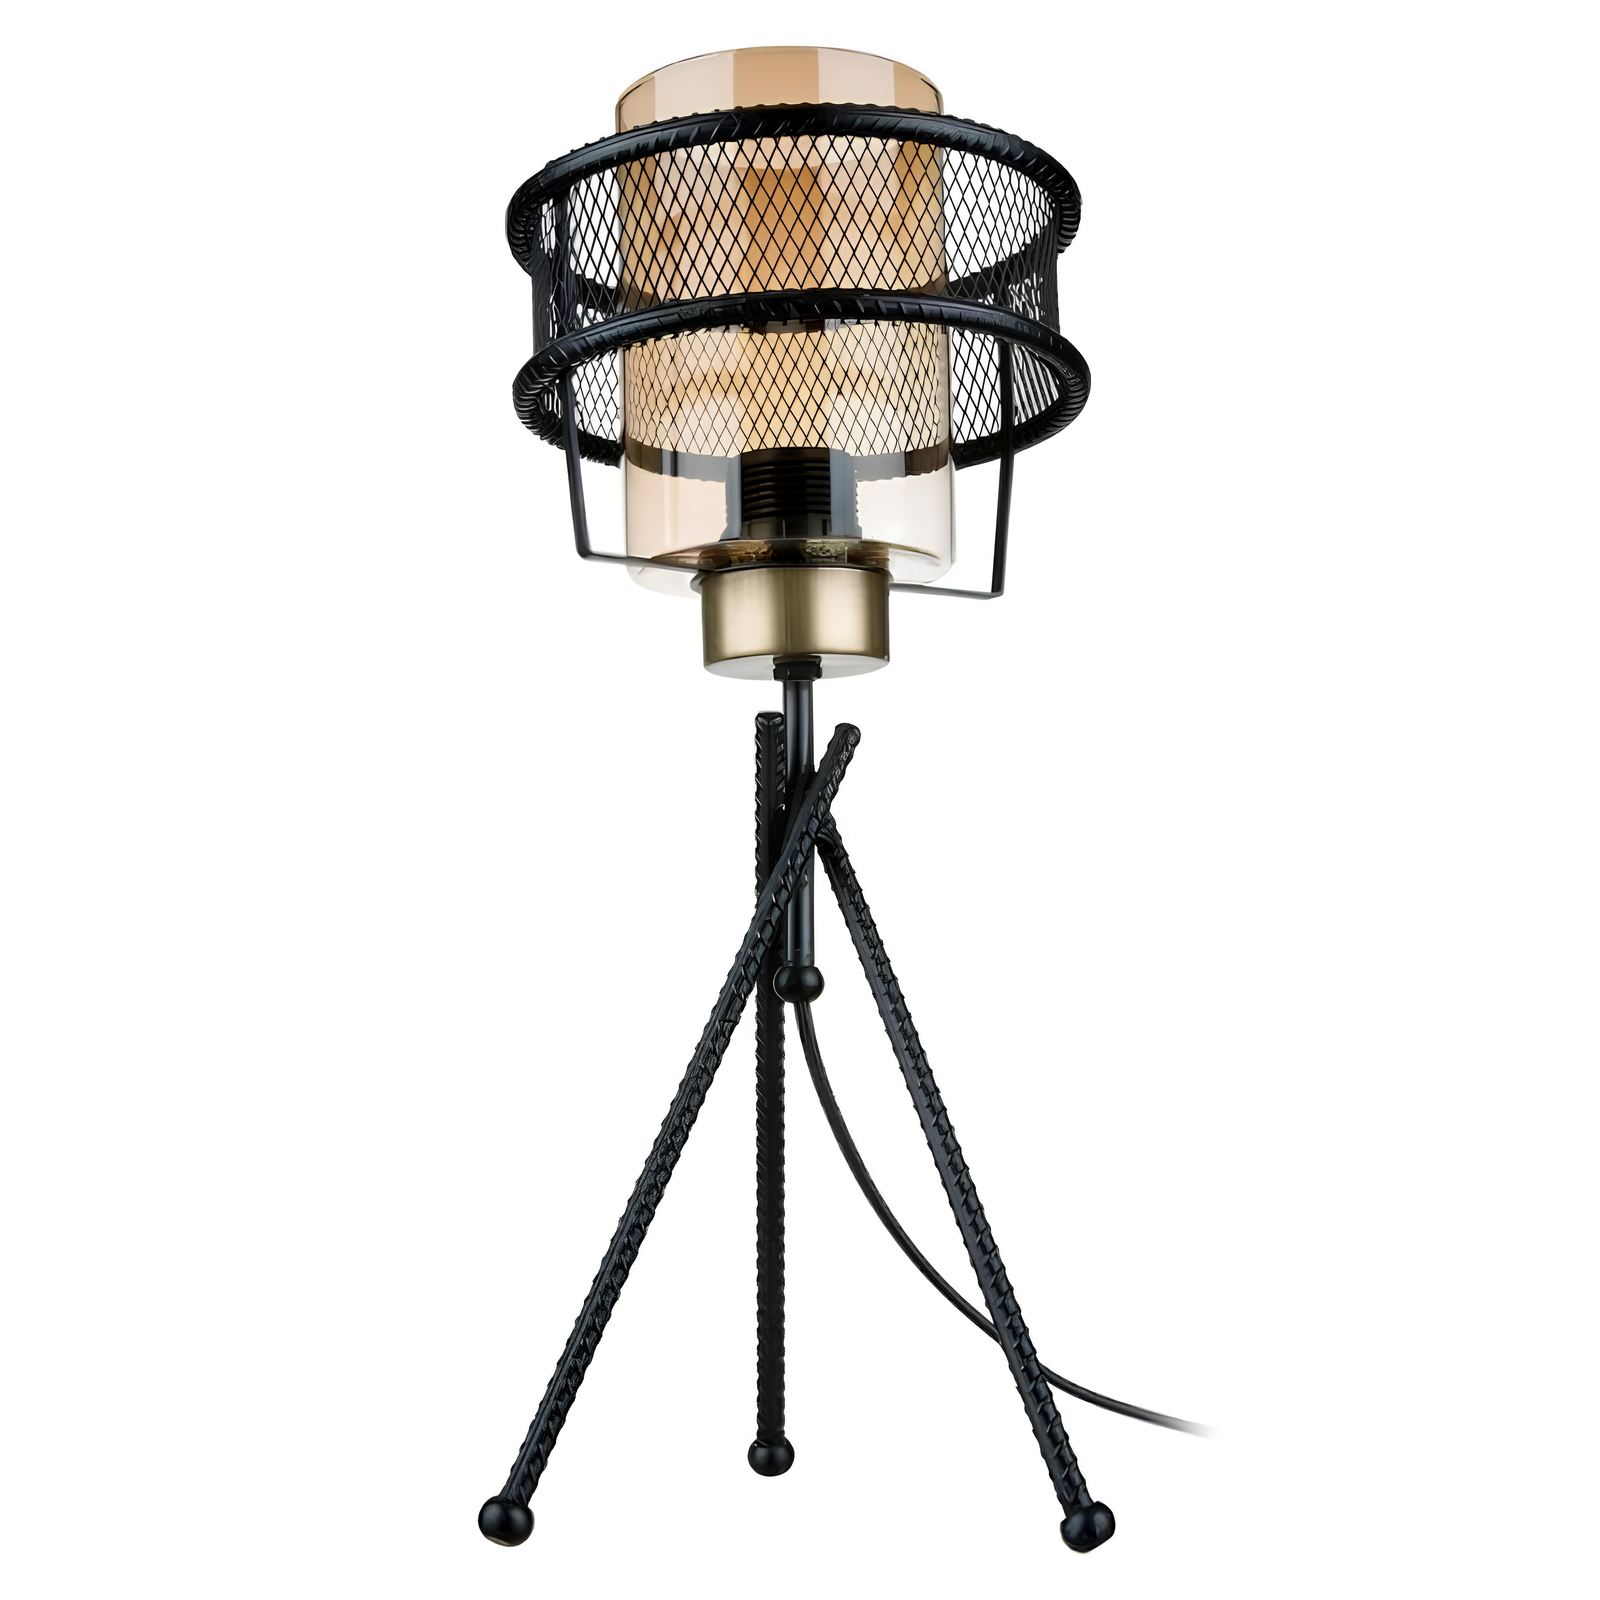 Lampada da tavolo design moderno in metallo intrecciato nero e vetro decorativo Fumè - Grann